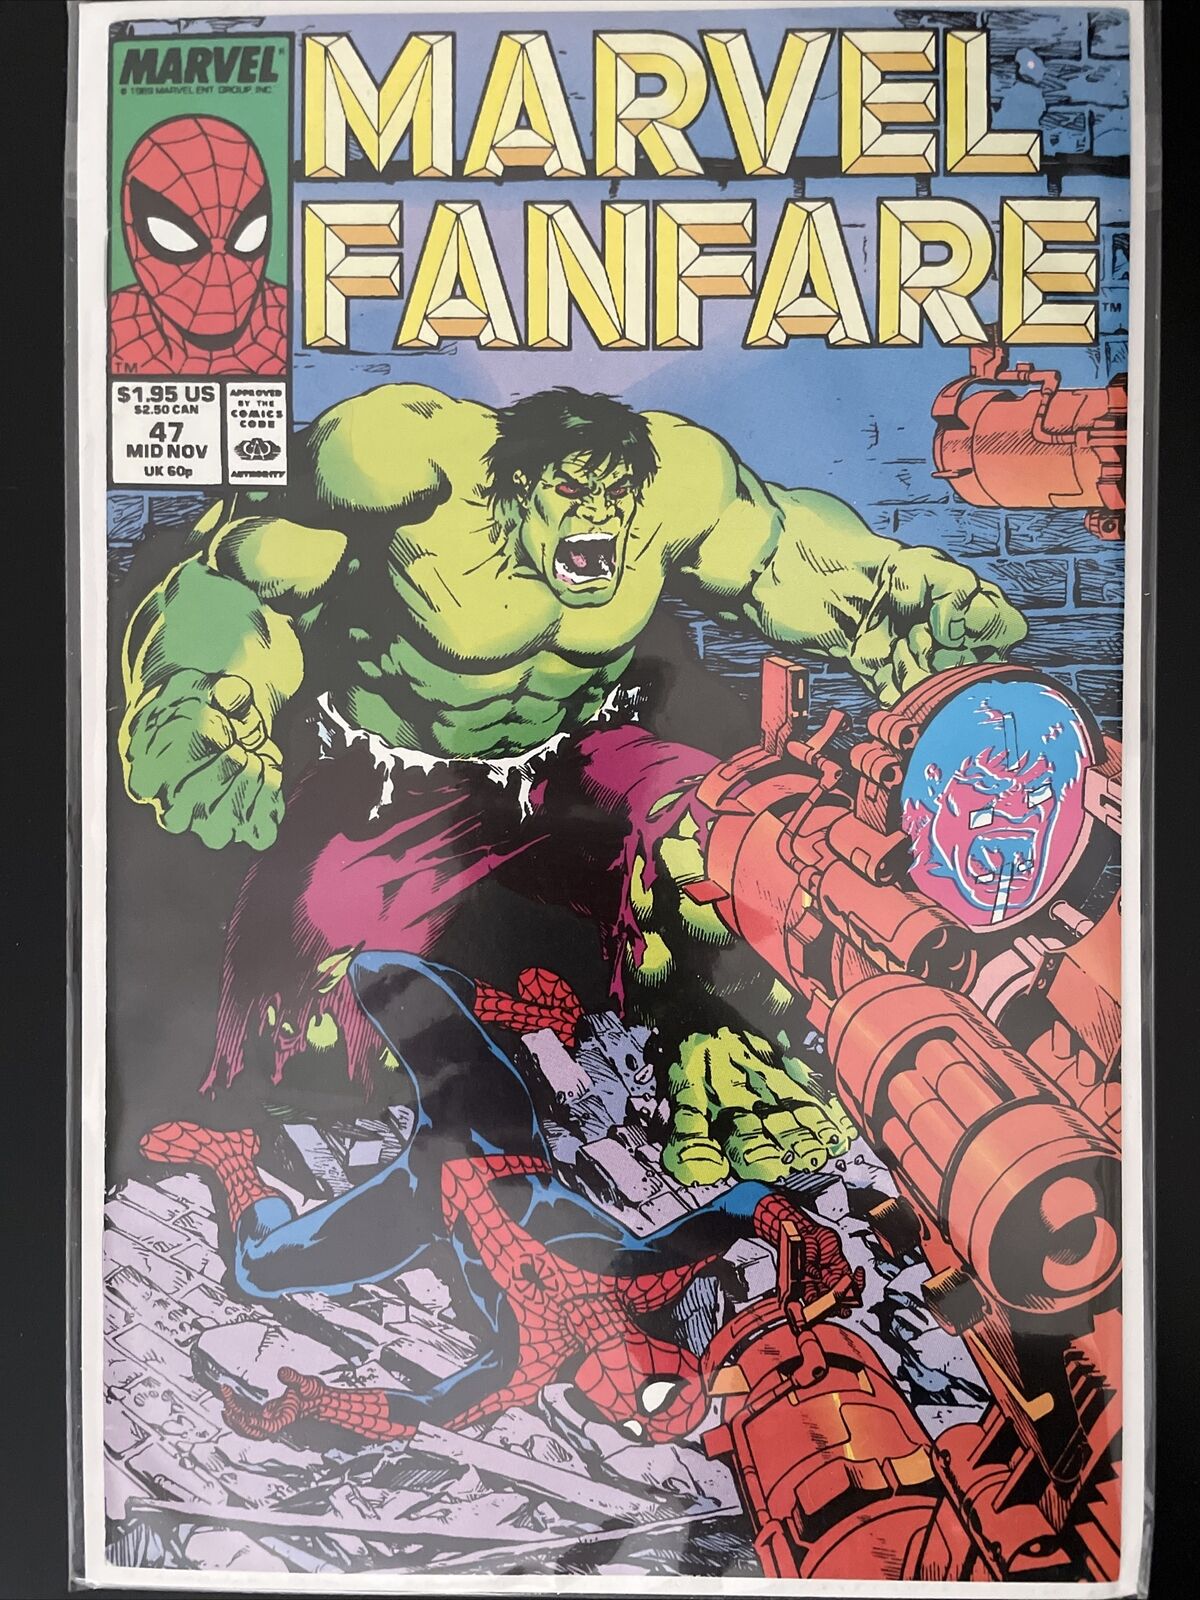 Marvel Fanfare #47 (Marvel) Incredible Hulk Spider-Man Newsstand